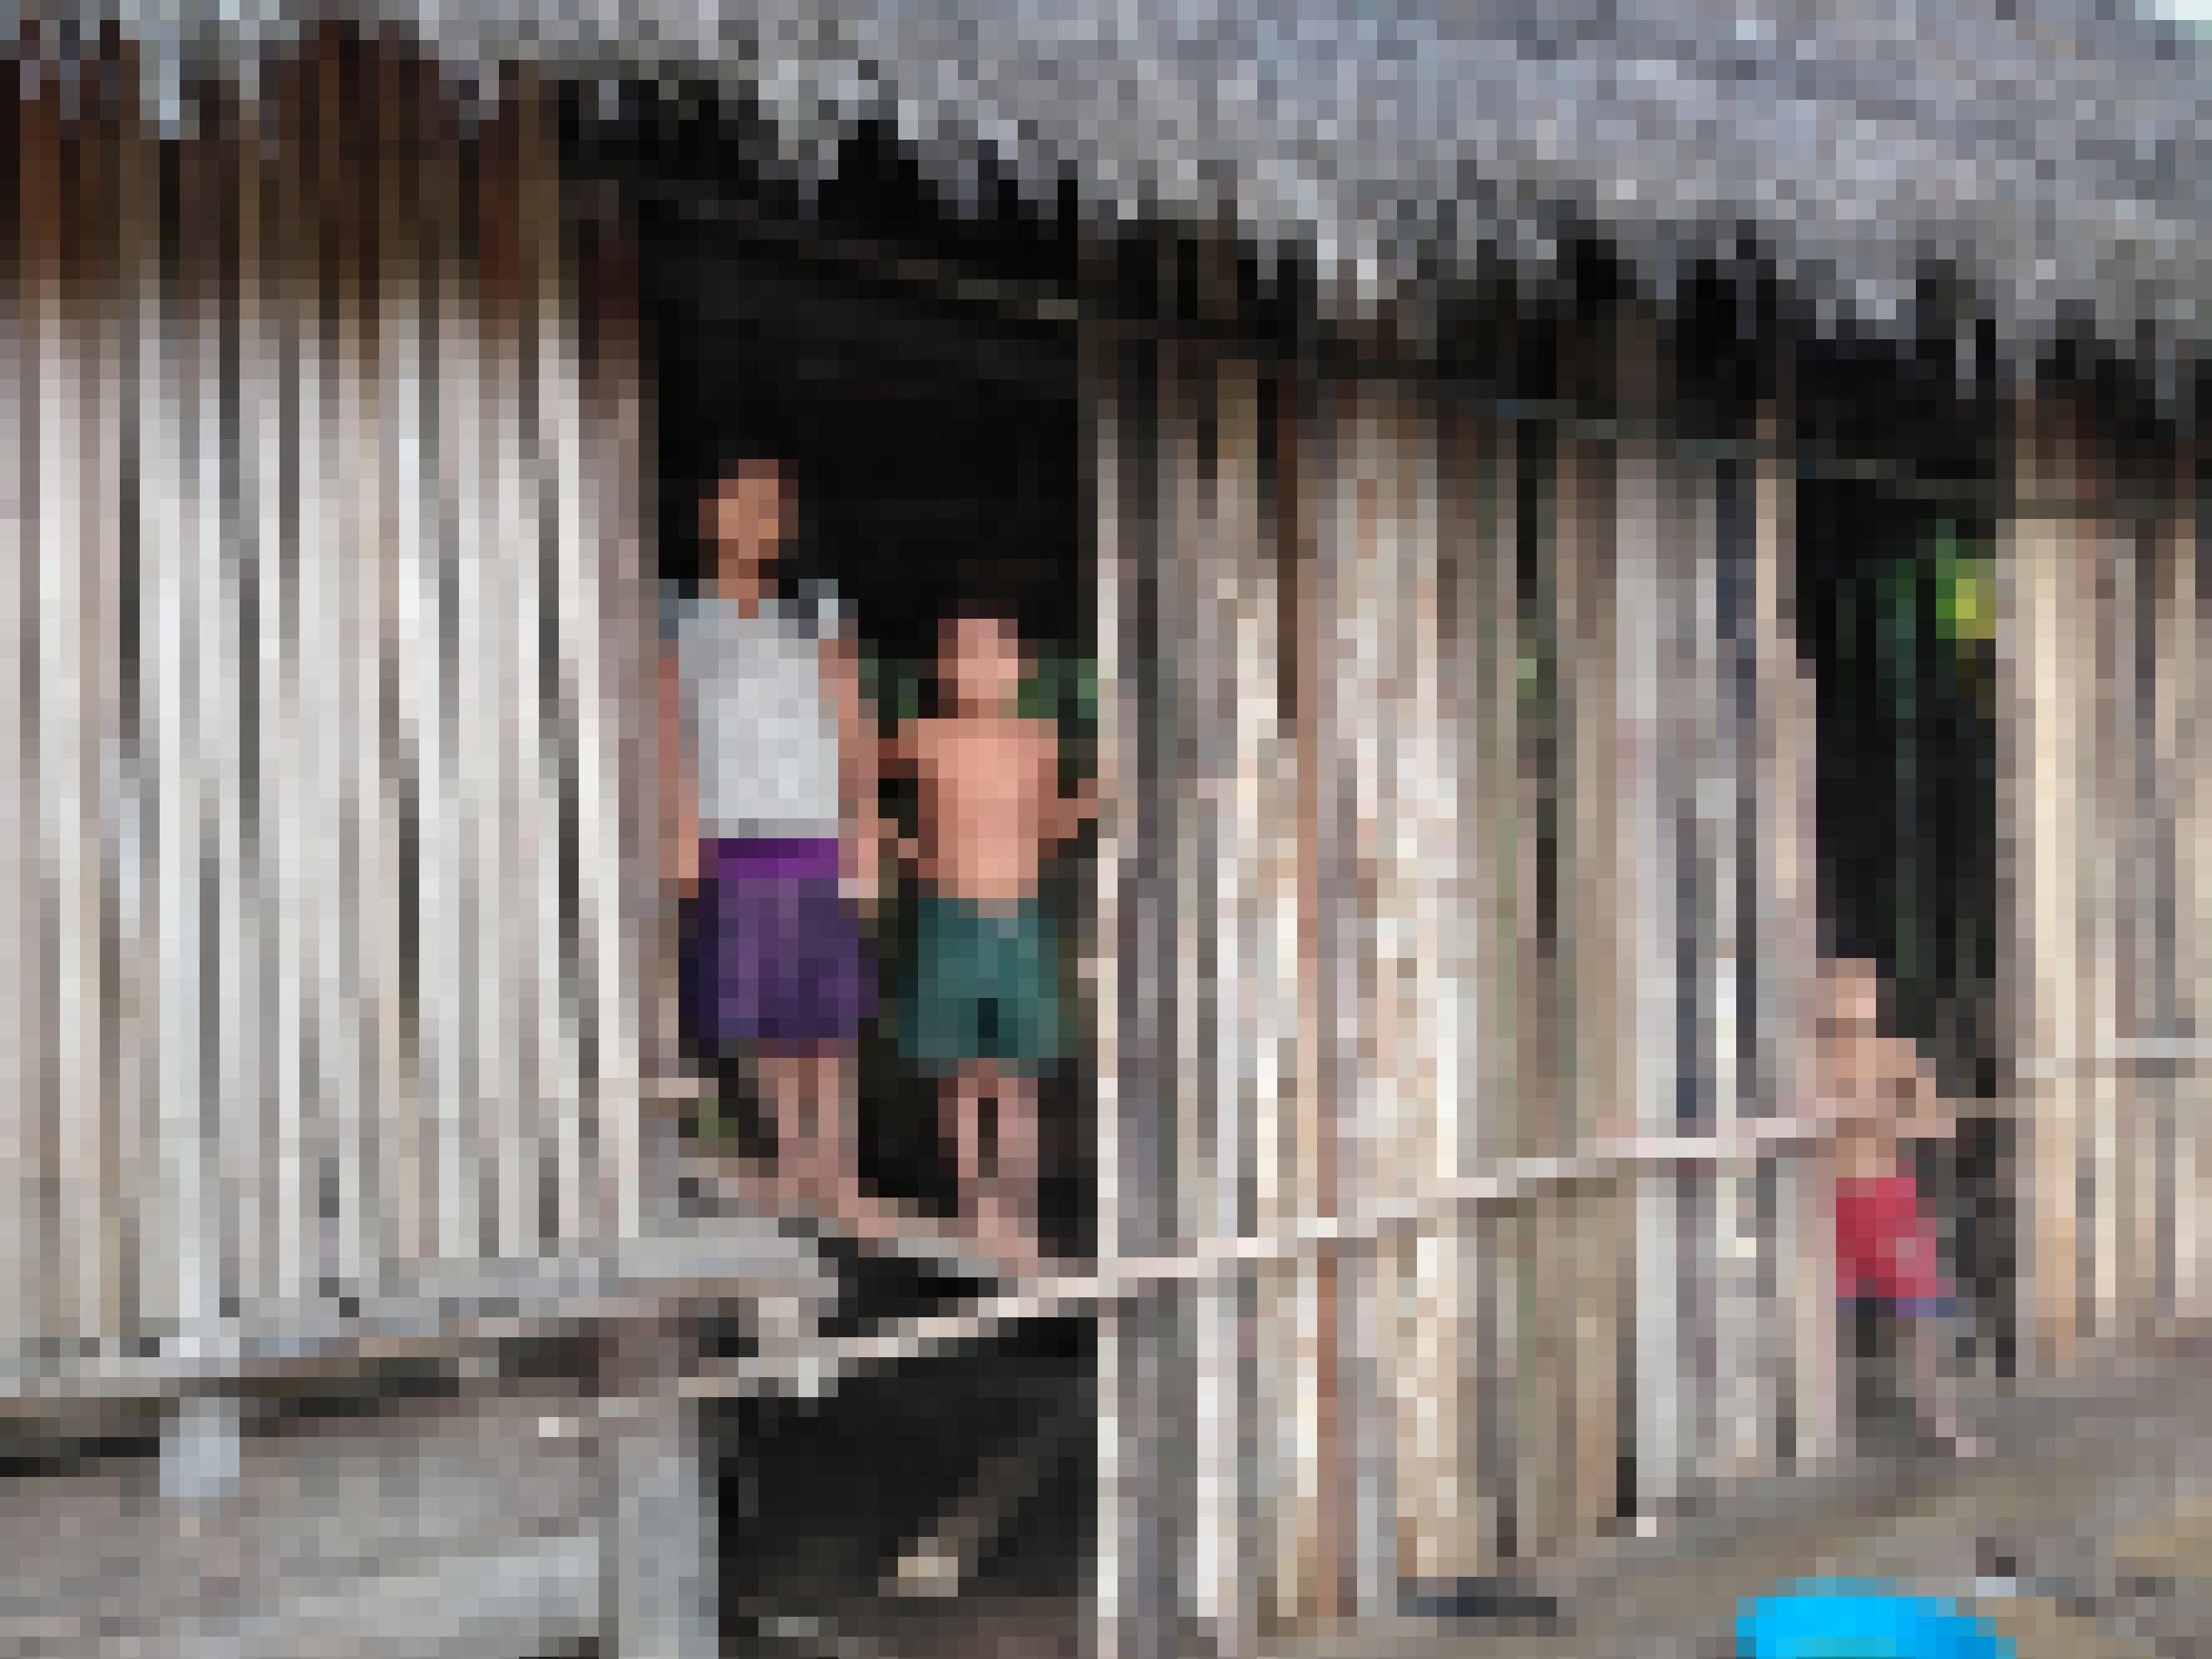 Ein Haus aus Pfählen und Palmdach, daraus schauen ein ca. 12-jähriges Mädchen und ein ca. 6-jähriger Junge, beide mit indigenen Gesichtszügen.